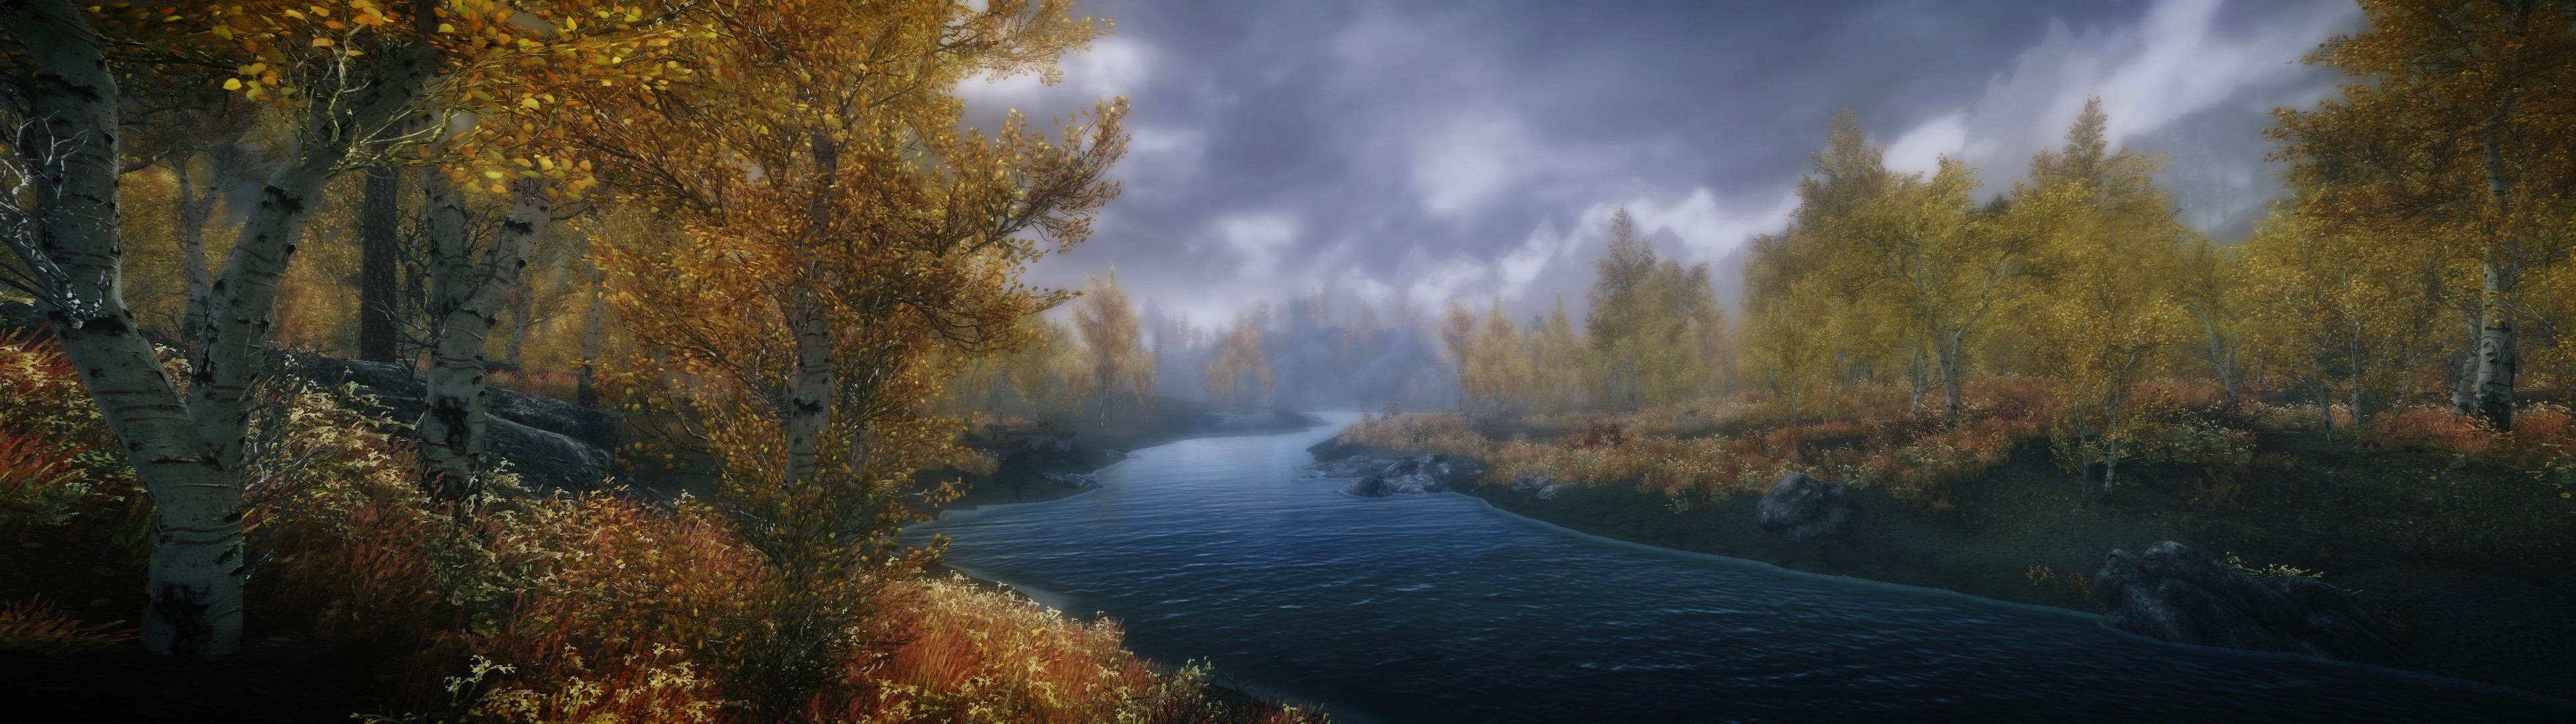 The Elder Scrolls V: Skyrim, Mods, Nature, Landscape, Multiple Display Wallpaper